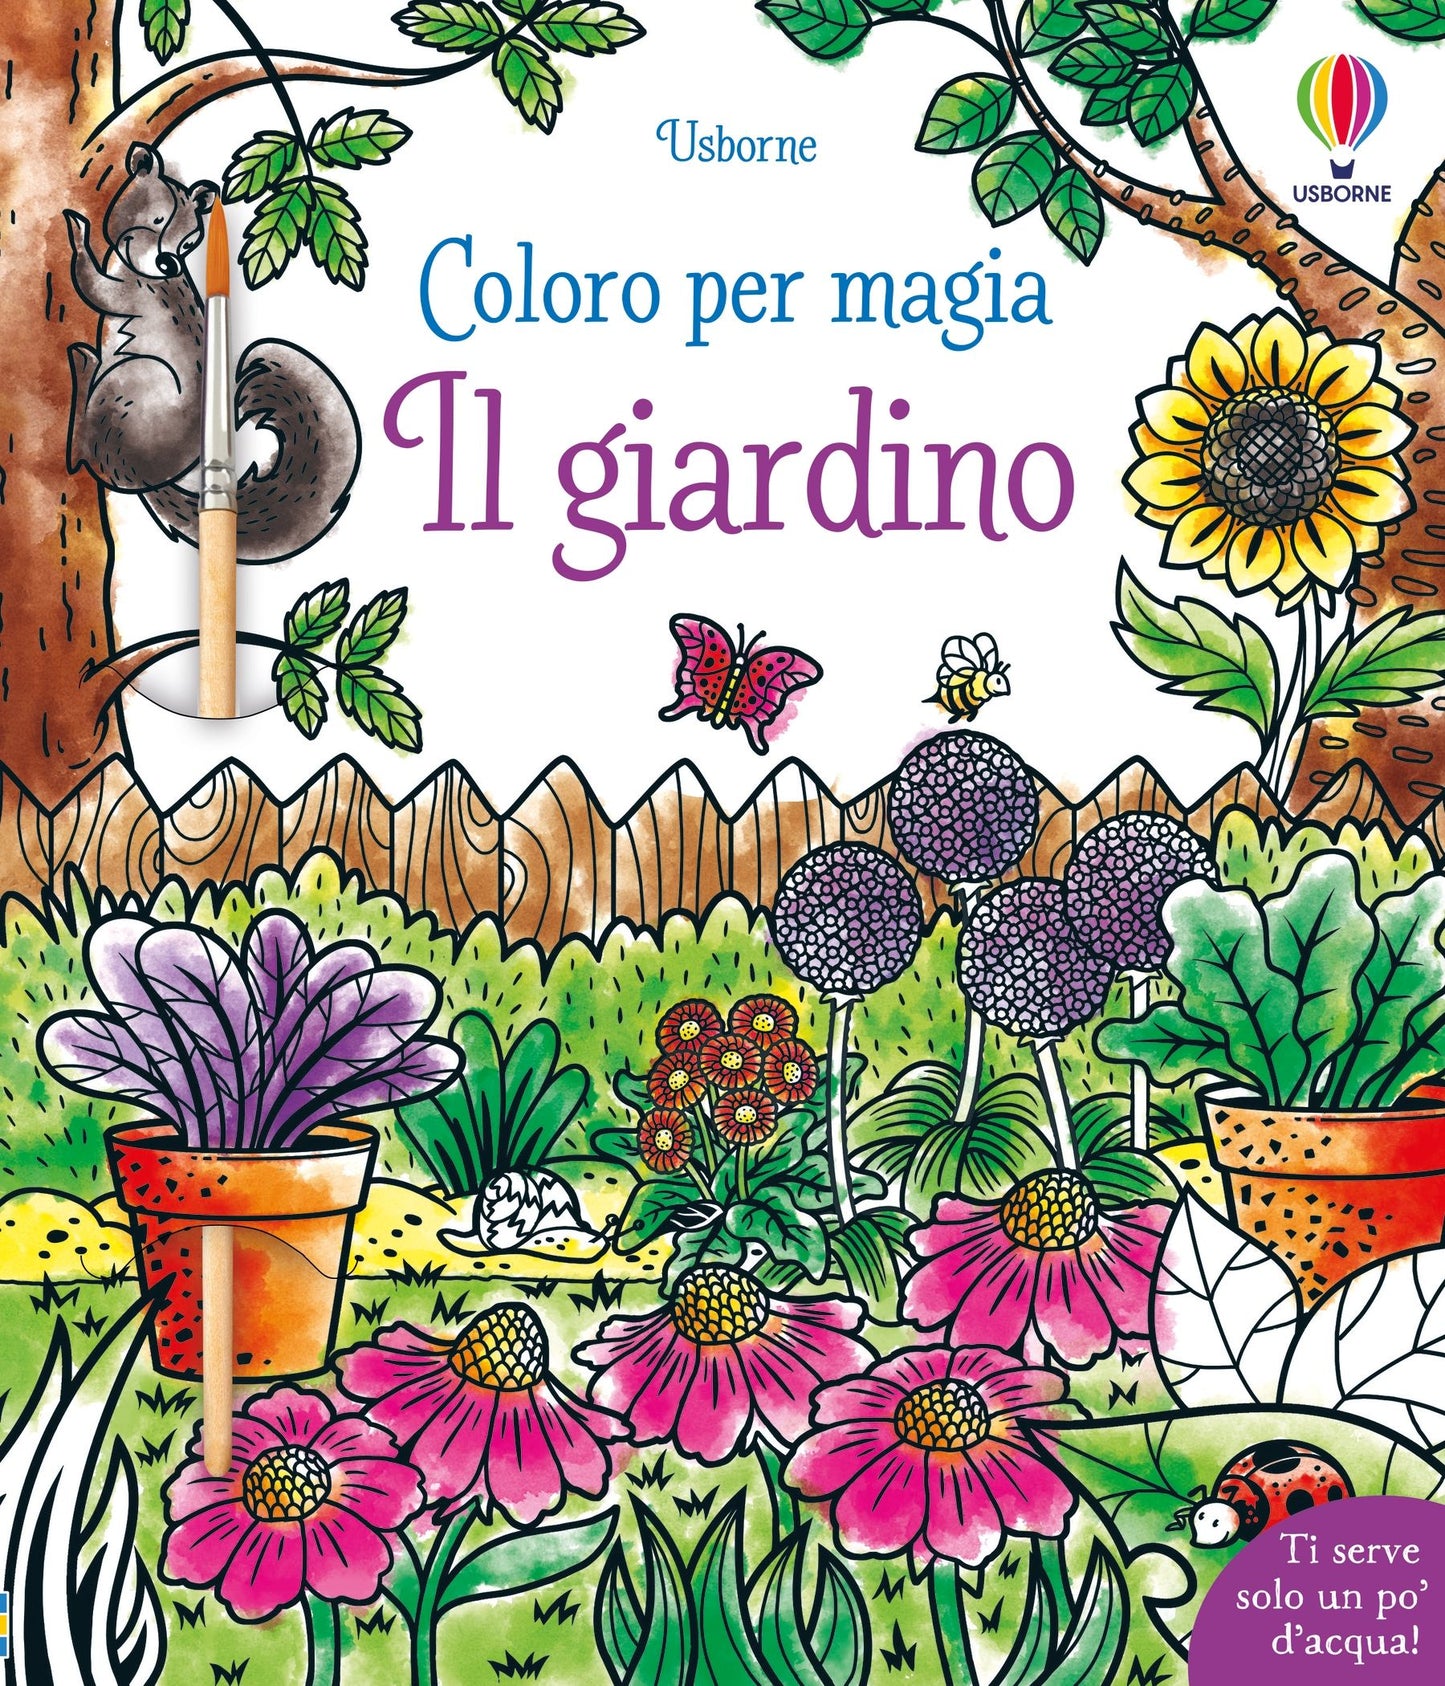 Coloro per magia - Il giardino